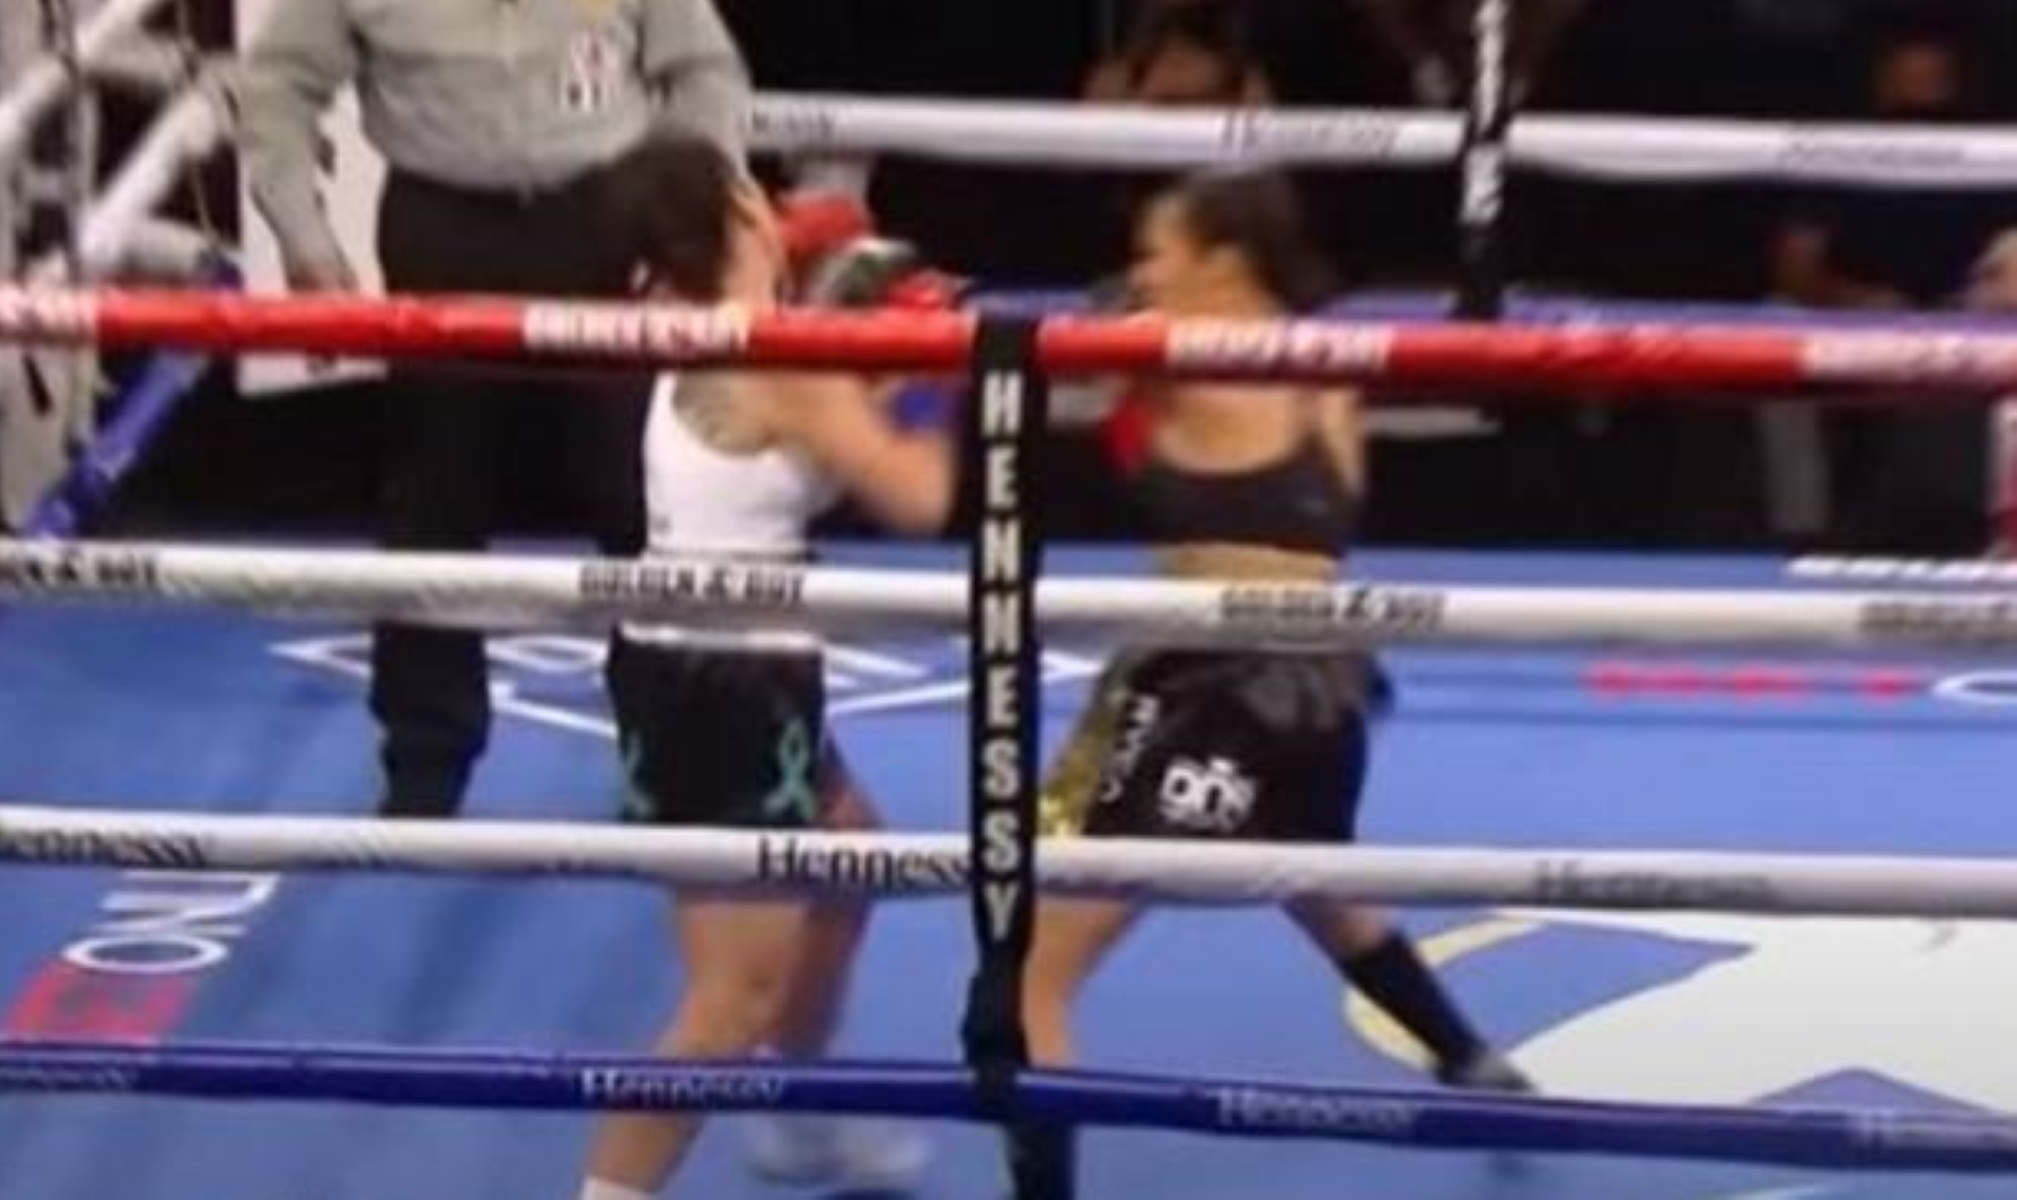 Τρομακτικό νοκ άουτ σε 7 δευτερόλεπτα σε γυναικείο αγώνα πυγμαχίας (video)